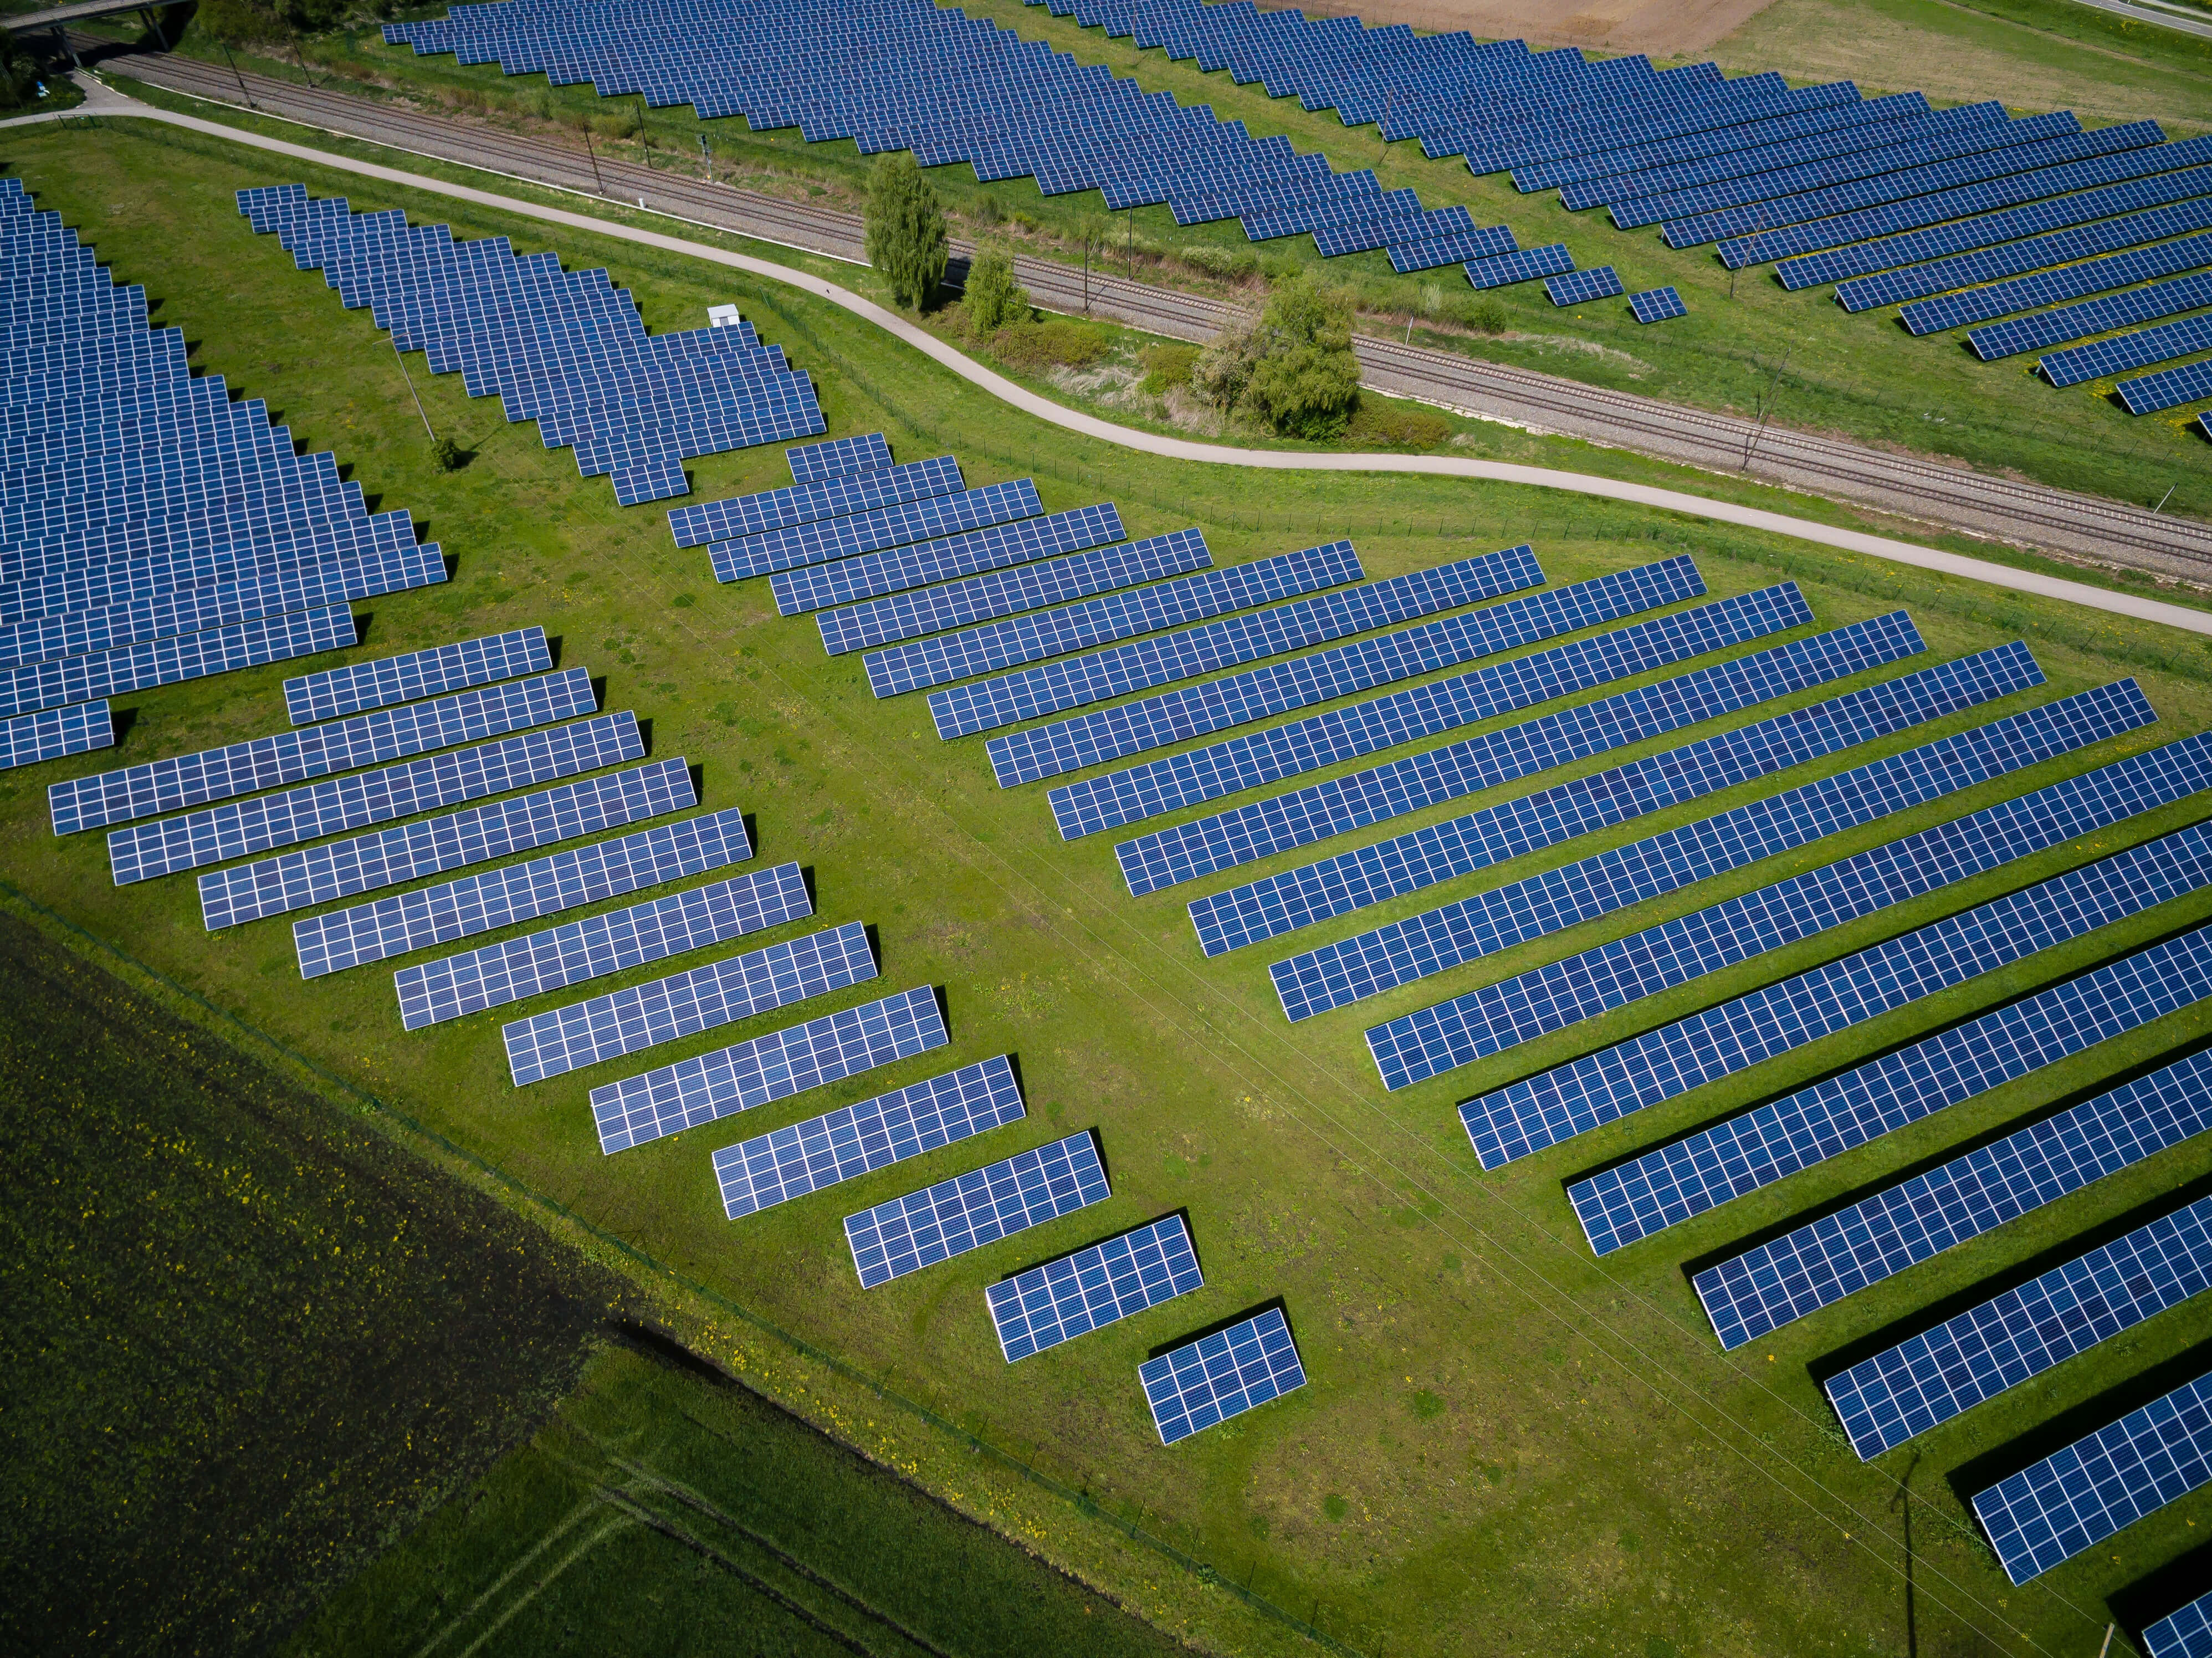 Wbudujemy elektrownię słoneczną o mocy 1MW w zaledwie 30 dni